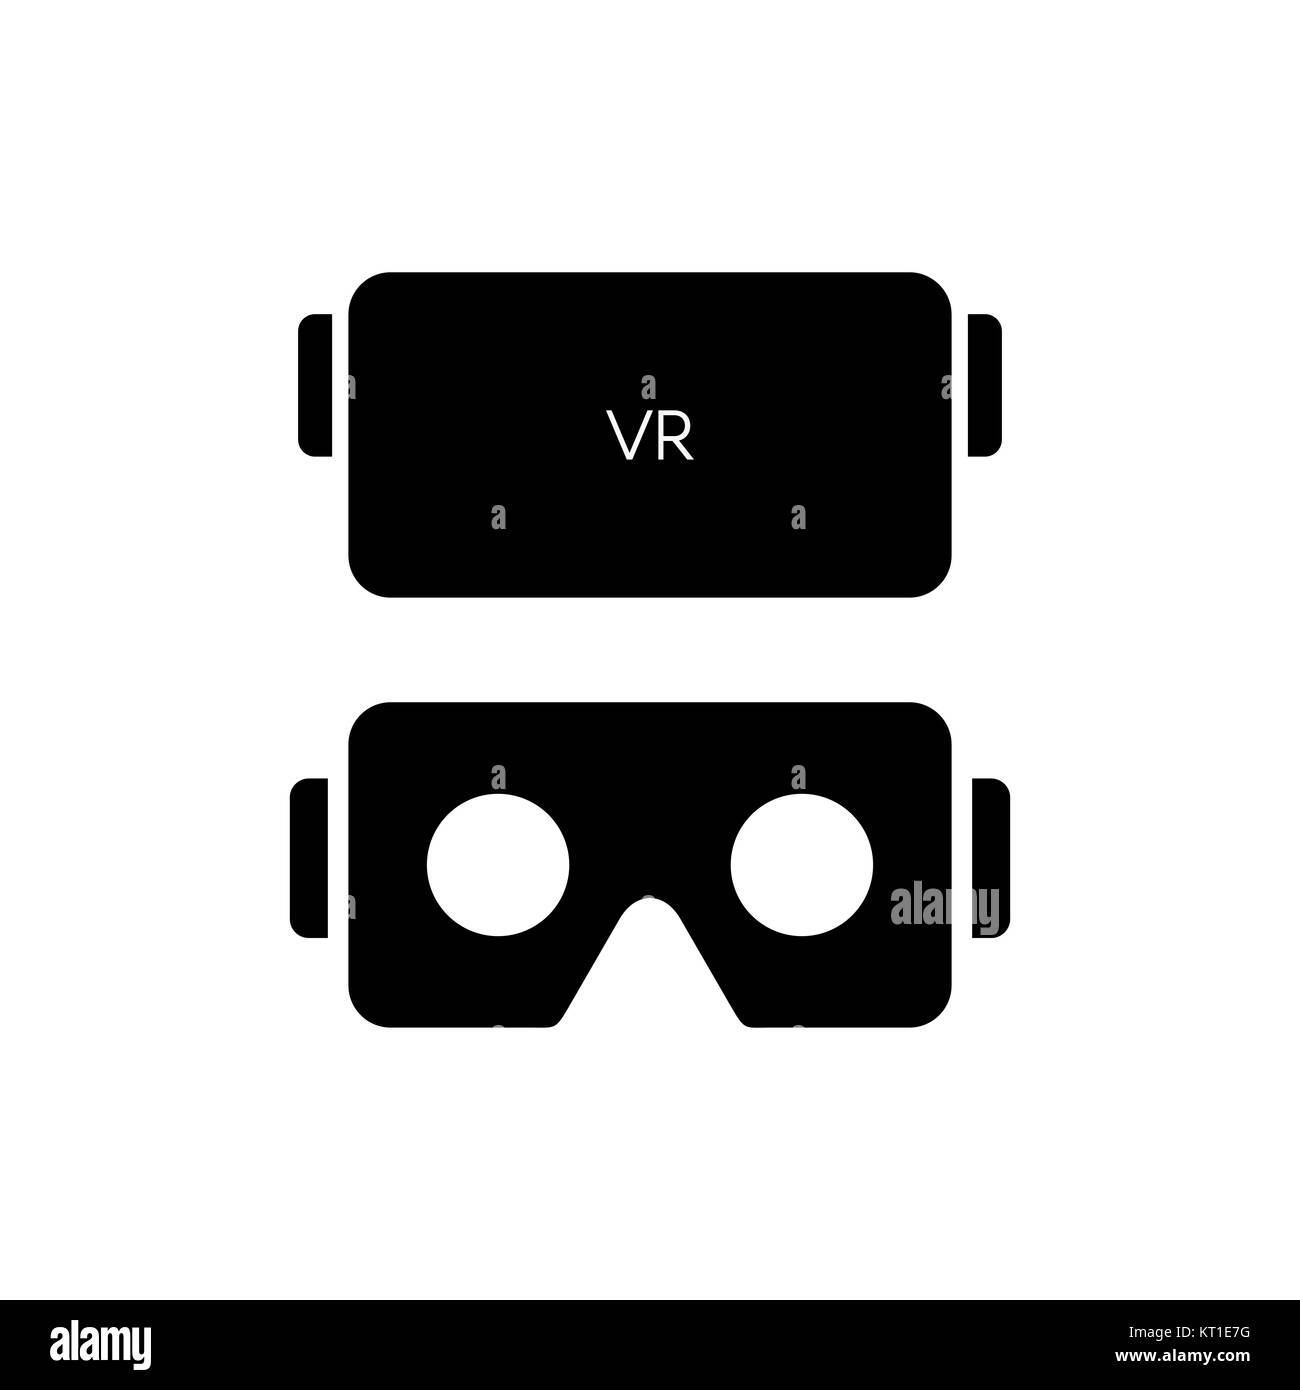 Gafas Realidad Virtual Para Niños Con Tarjetas Animales 4d